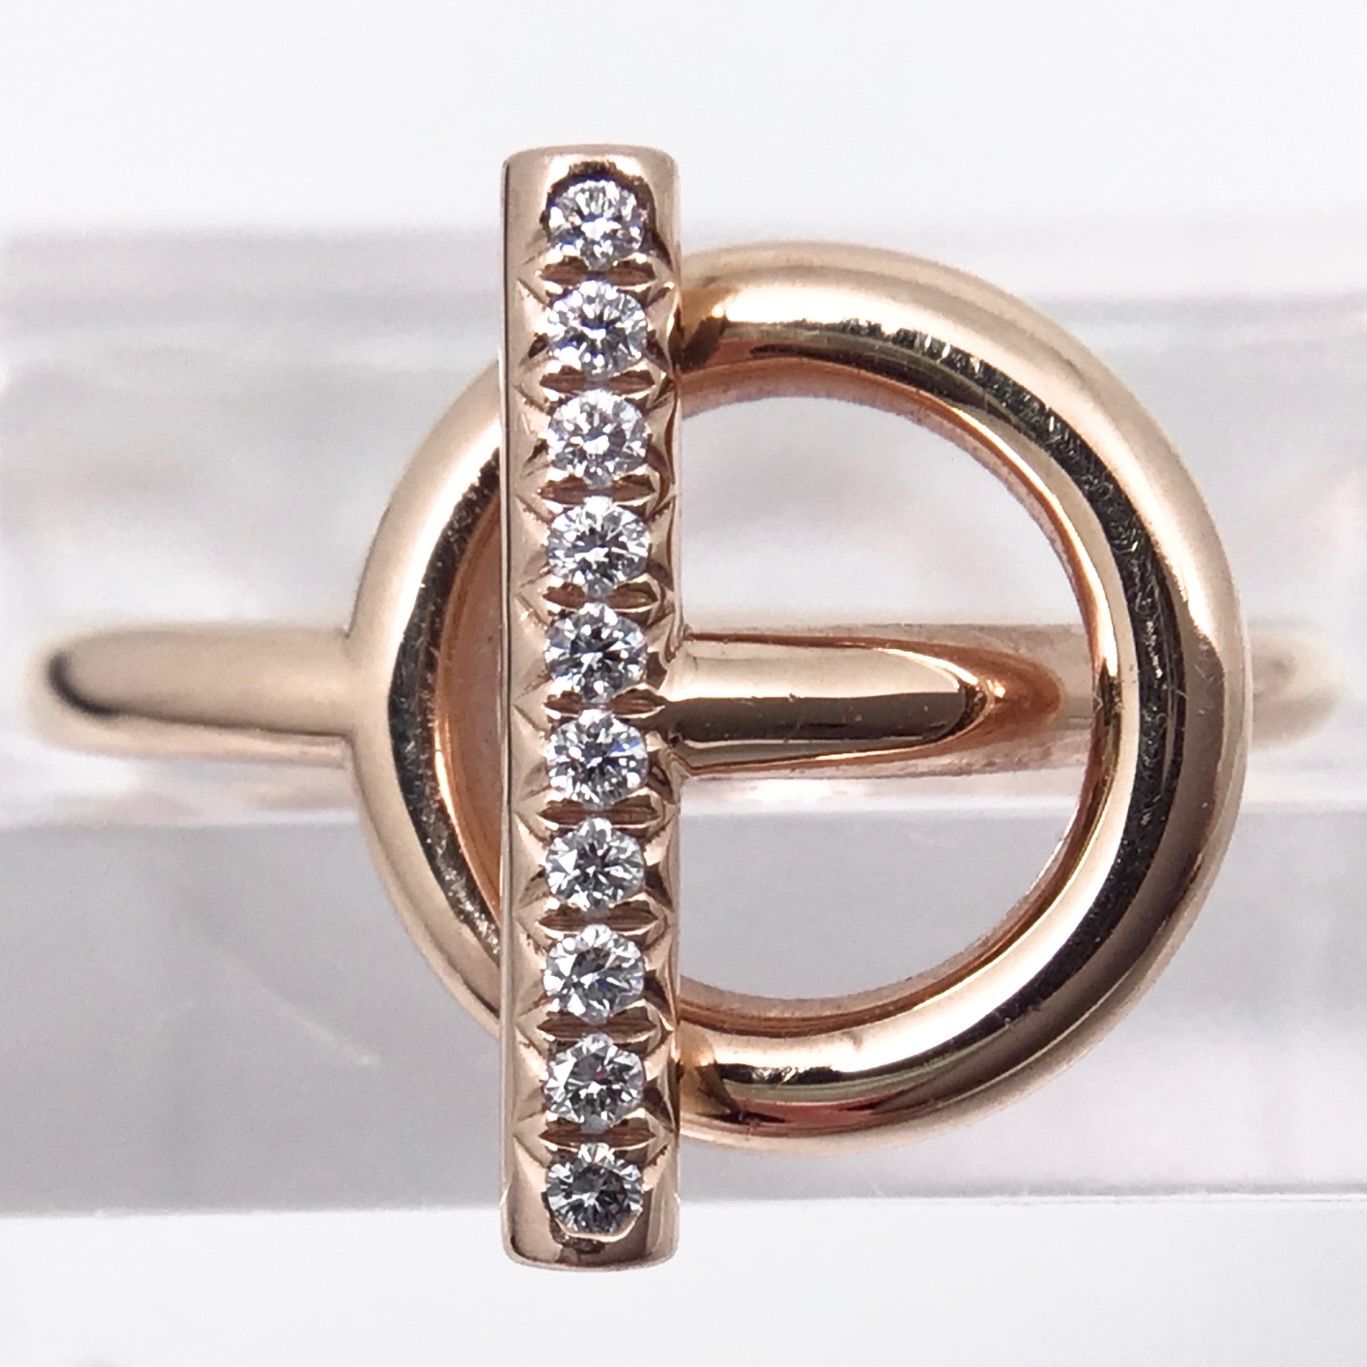 【エルメス】エシャペ PM 指輪 750PG ピンクゴールド ダイヤモンド